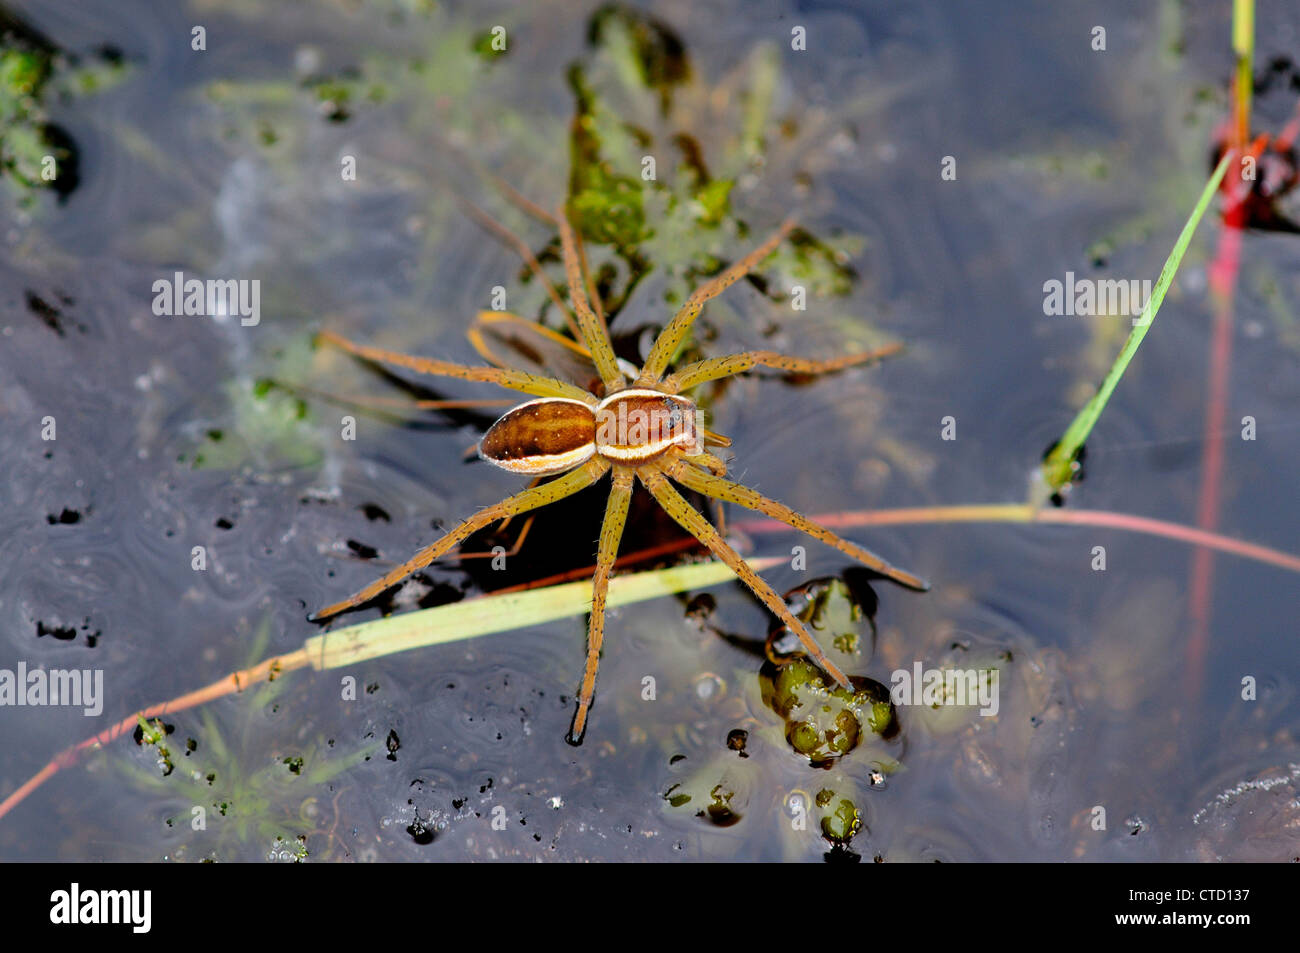 Floß oder Sumpf Spinne auf Heideland Teich. Arne, Dorset, UK. Juli 2012 Stockfoto